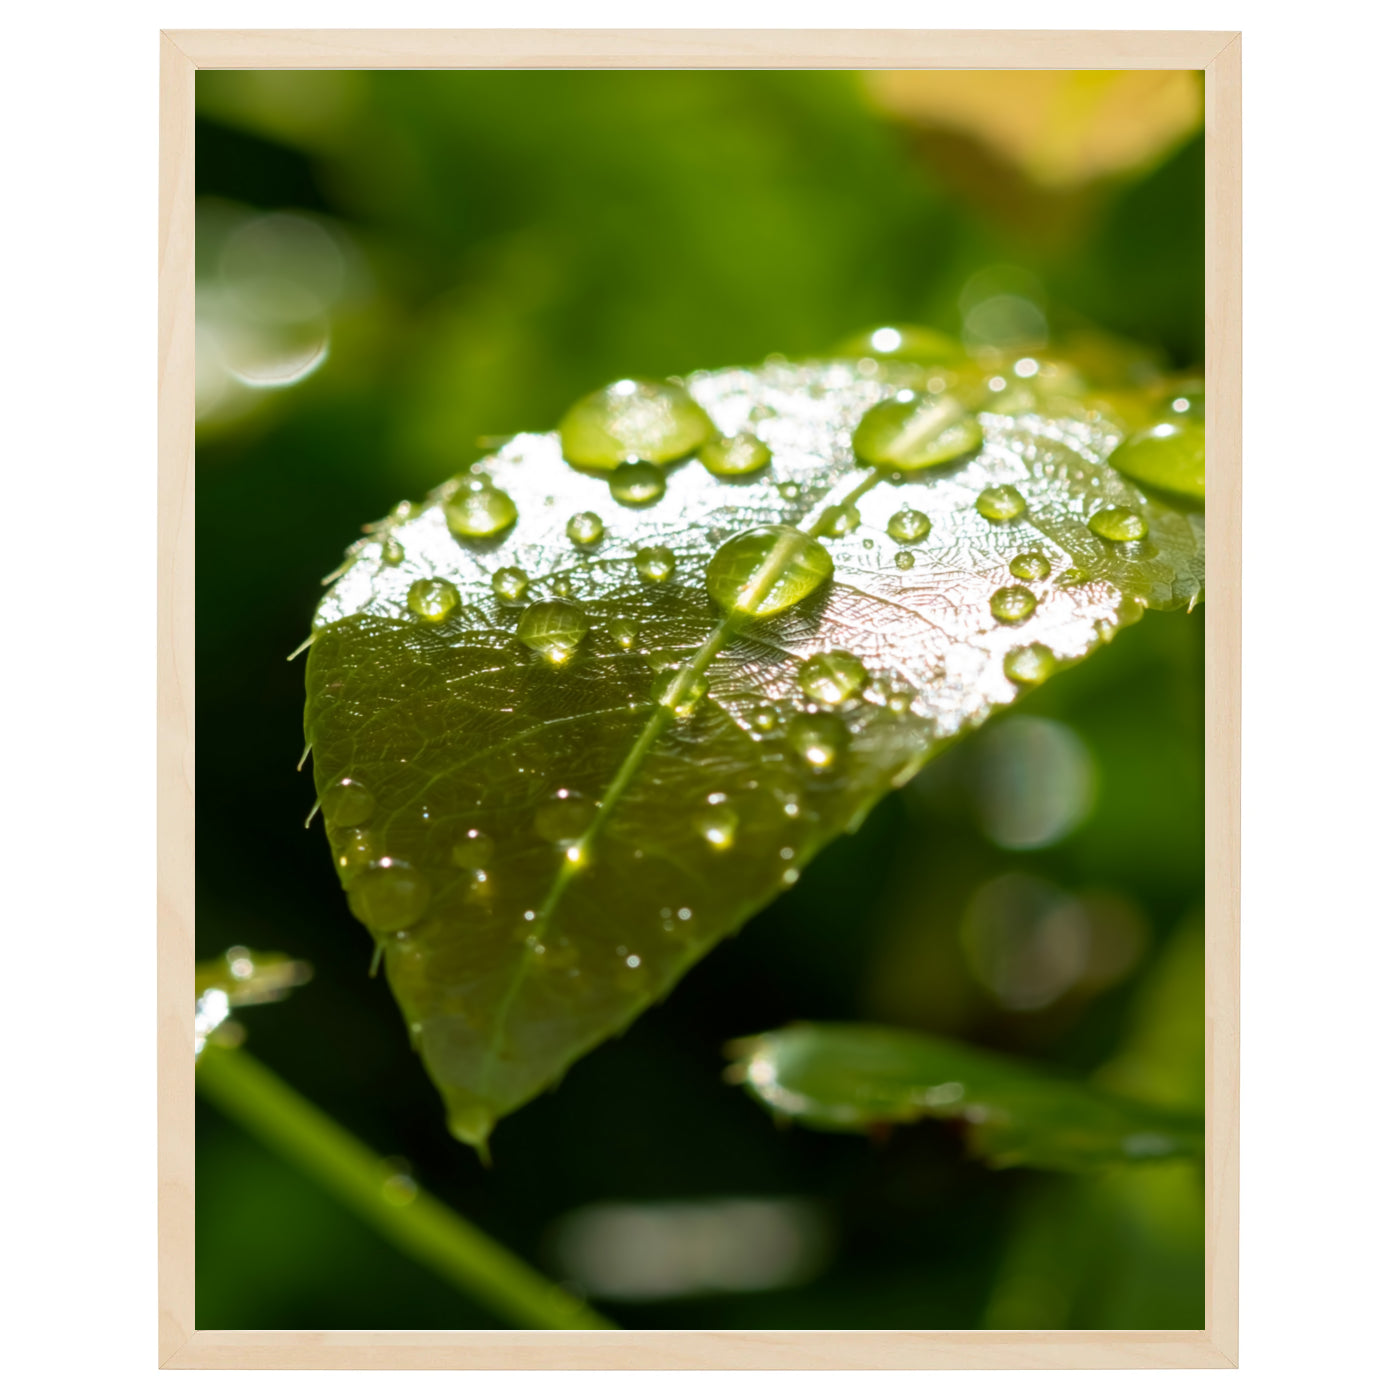 Et tæt billede af et grønt blad med dugdråber, hvor hver detalje af bladets struktur og form er fanget i billedet. Dugdråbernes glans skaber en magisk effekt, der fanger øjet.